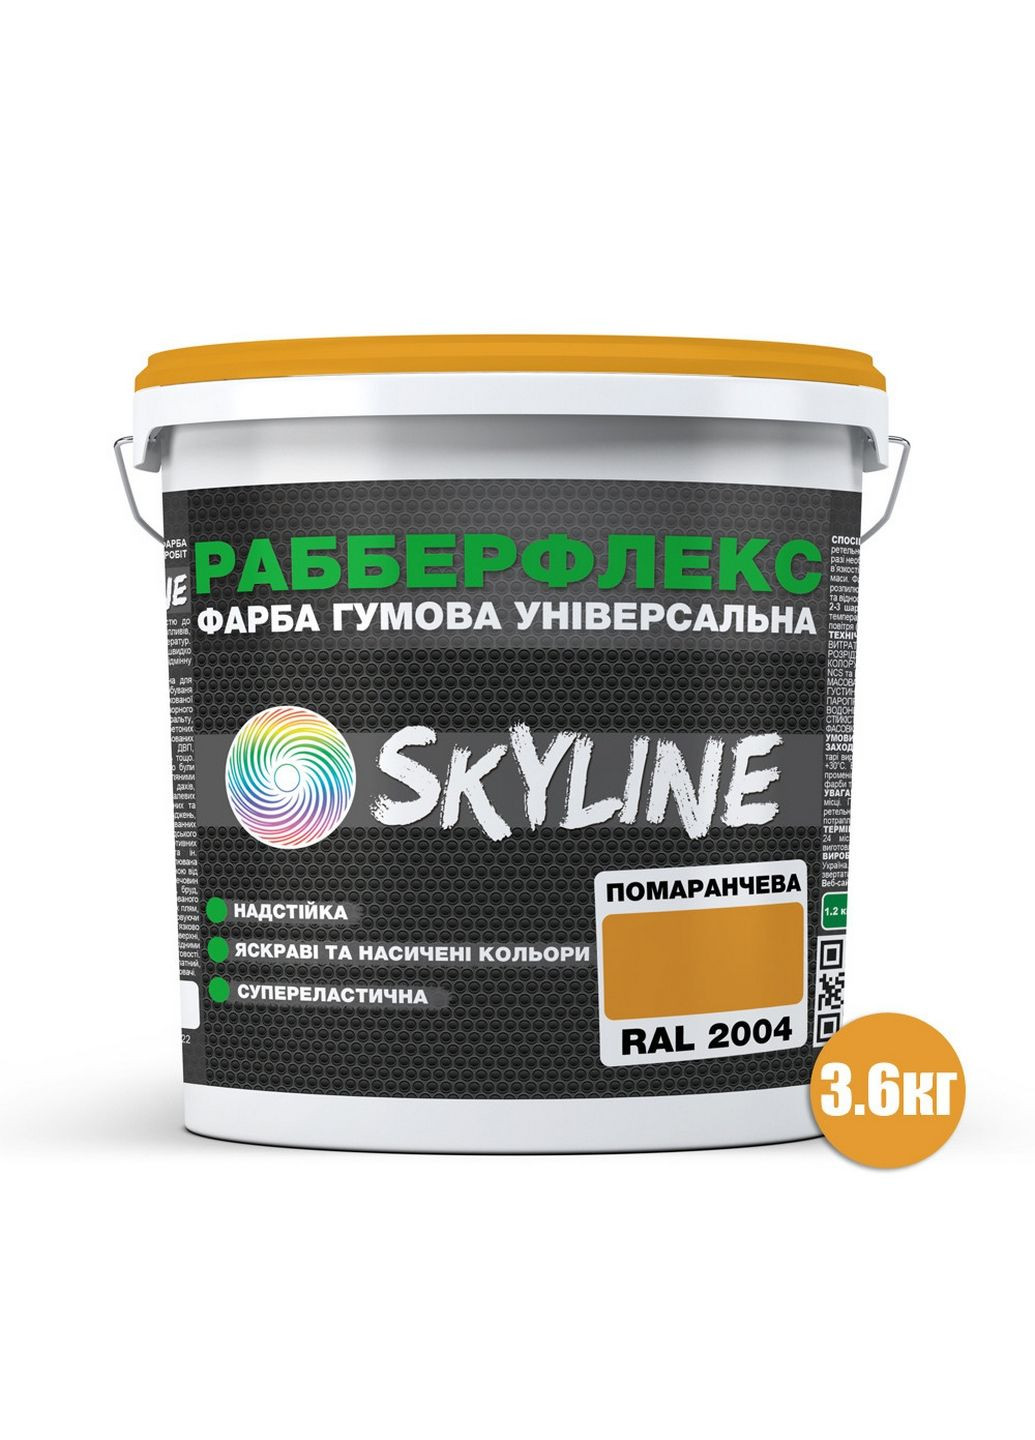 Надстійка фарба гумова супереластична «РабберФлекс» 3,6 кг SkyLine (289365743)